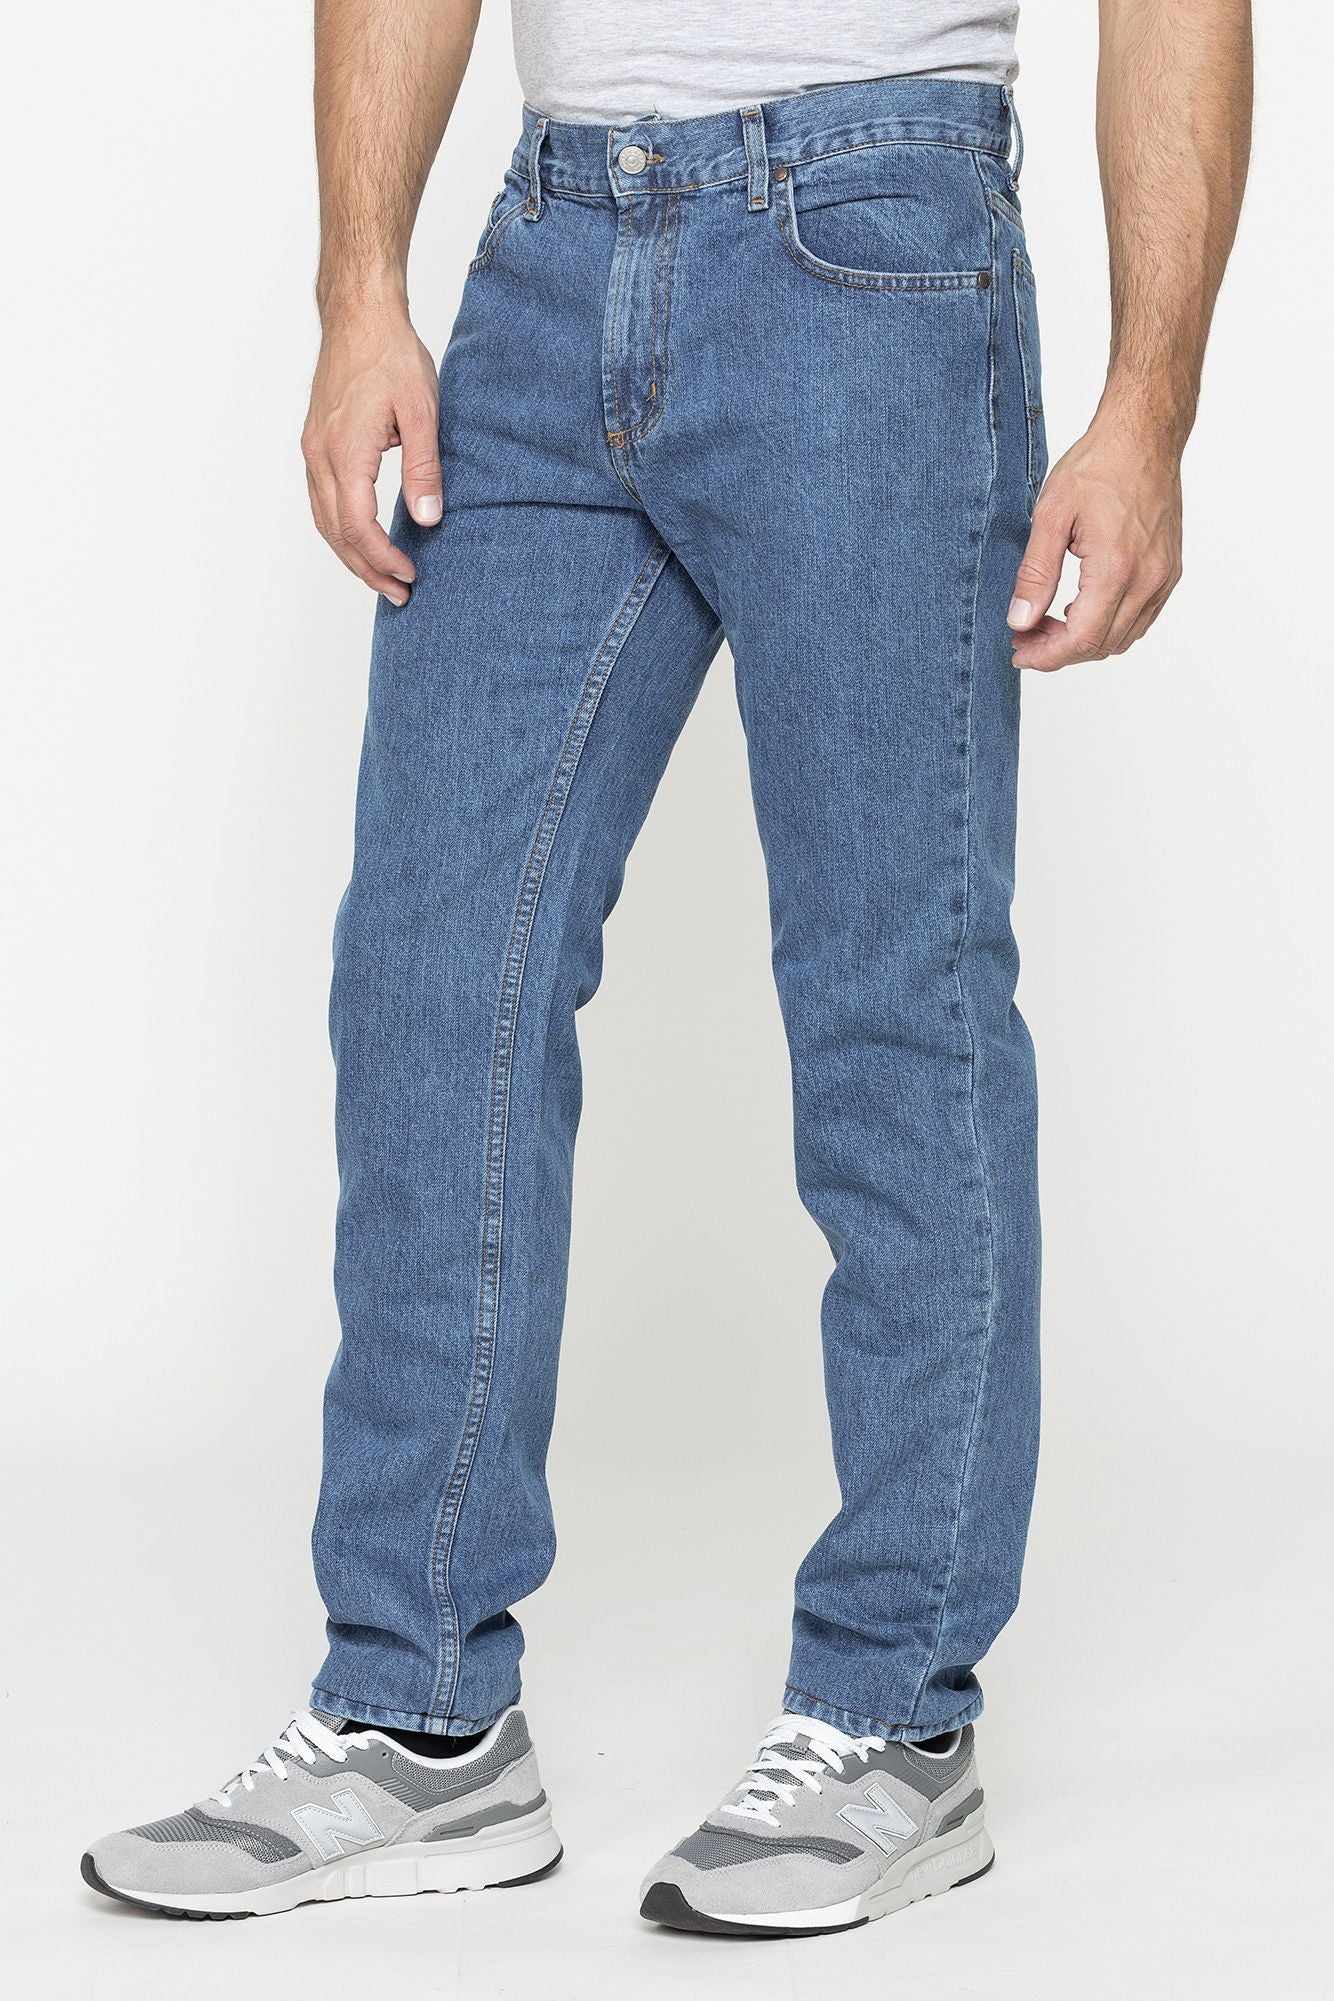 Jeans 700/1021 Carrera Colore 500 - Blocco94